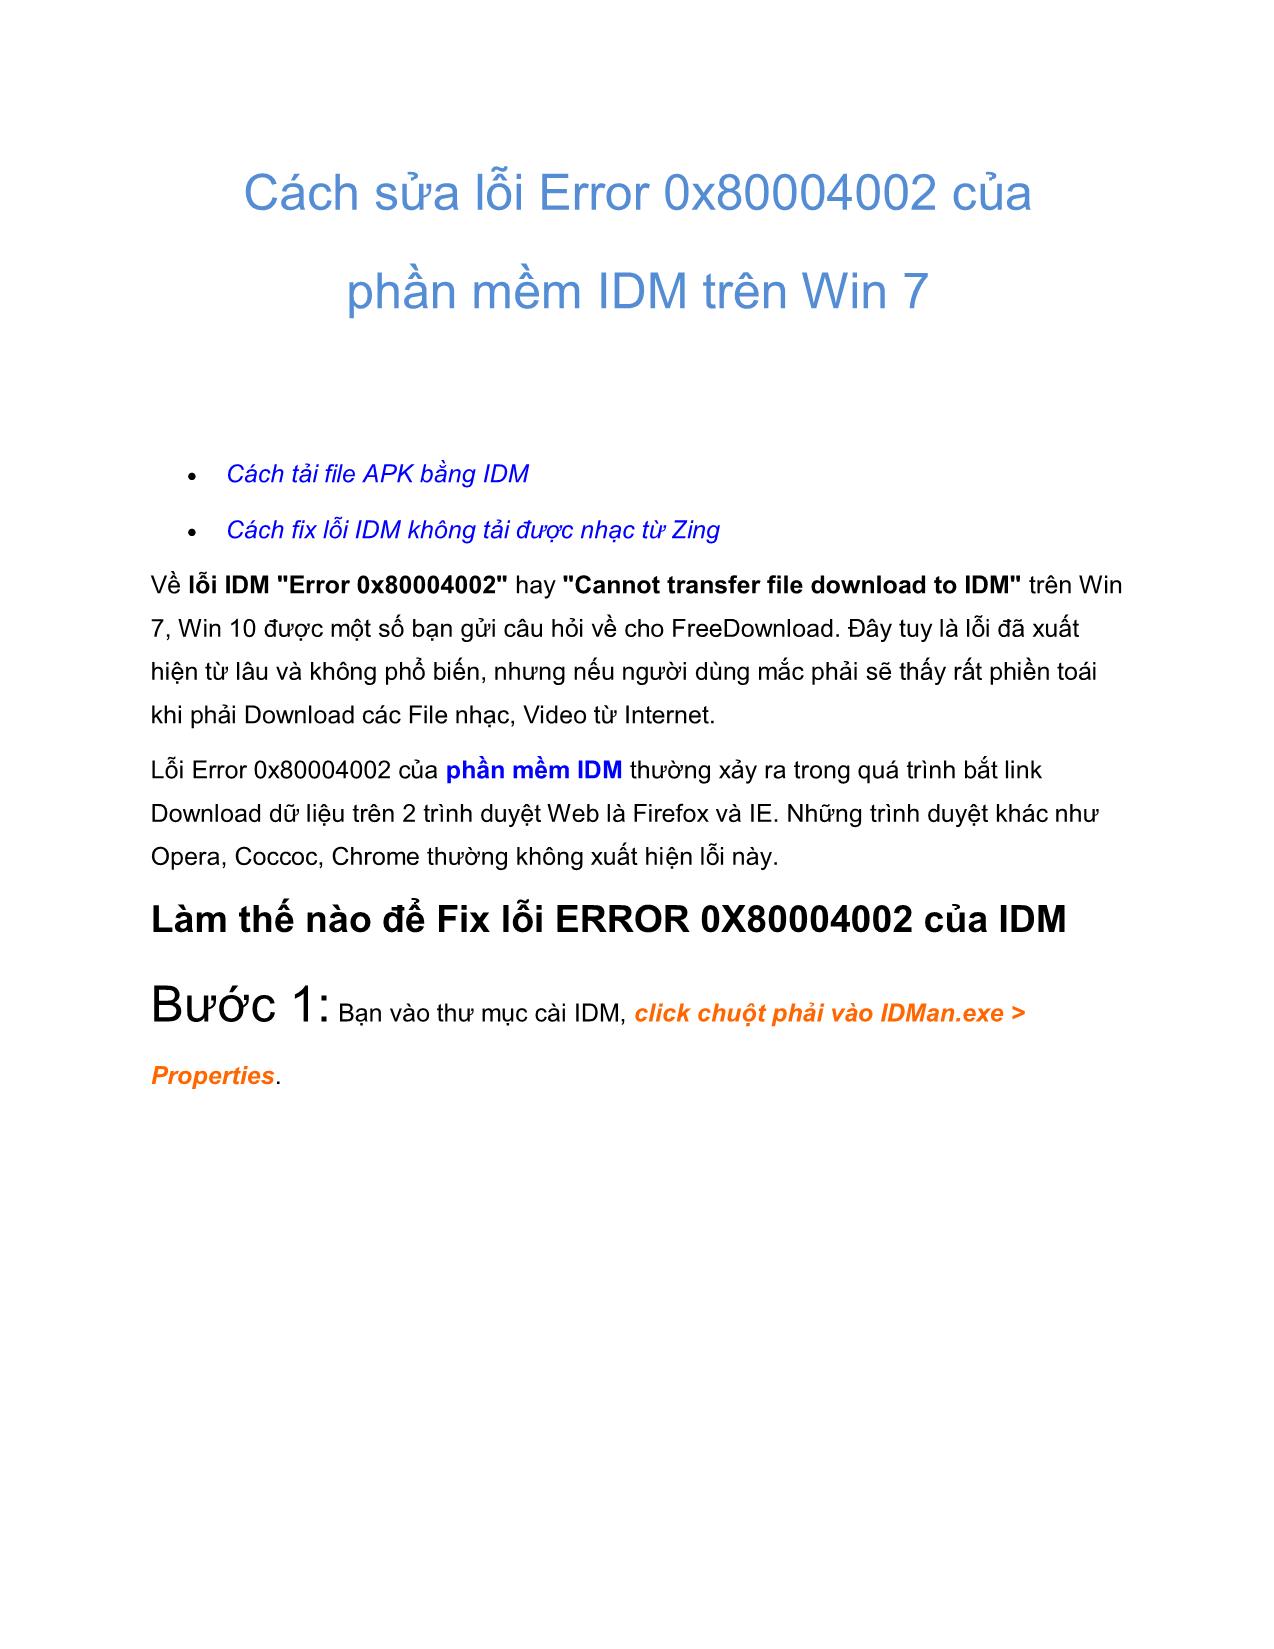 Tài liệu Cách sửa lỗi Error 0x80004002 của phần mềm IDM trên Win 7 trang 1